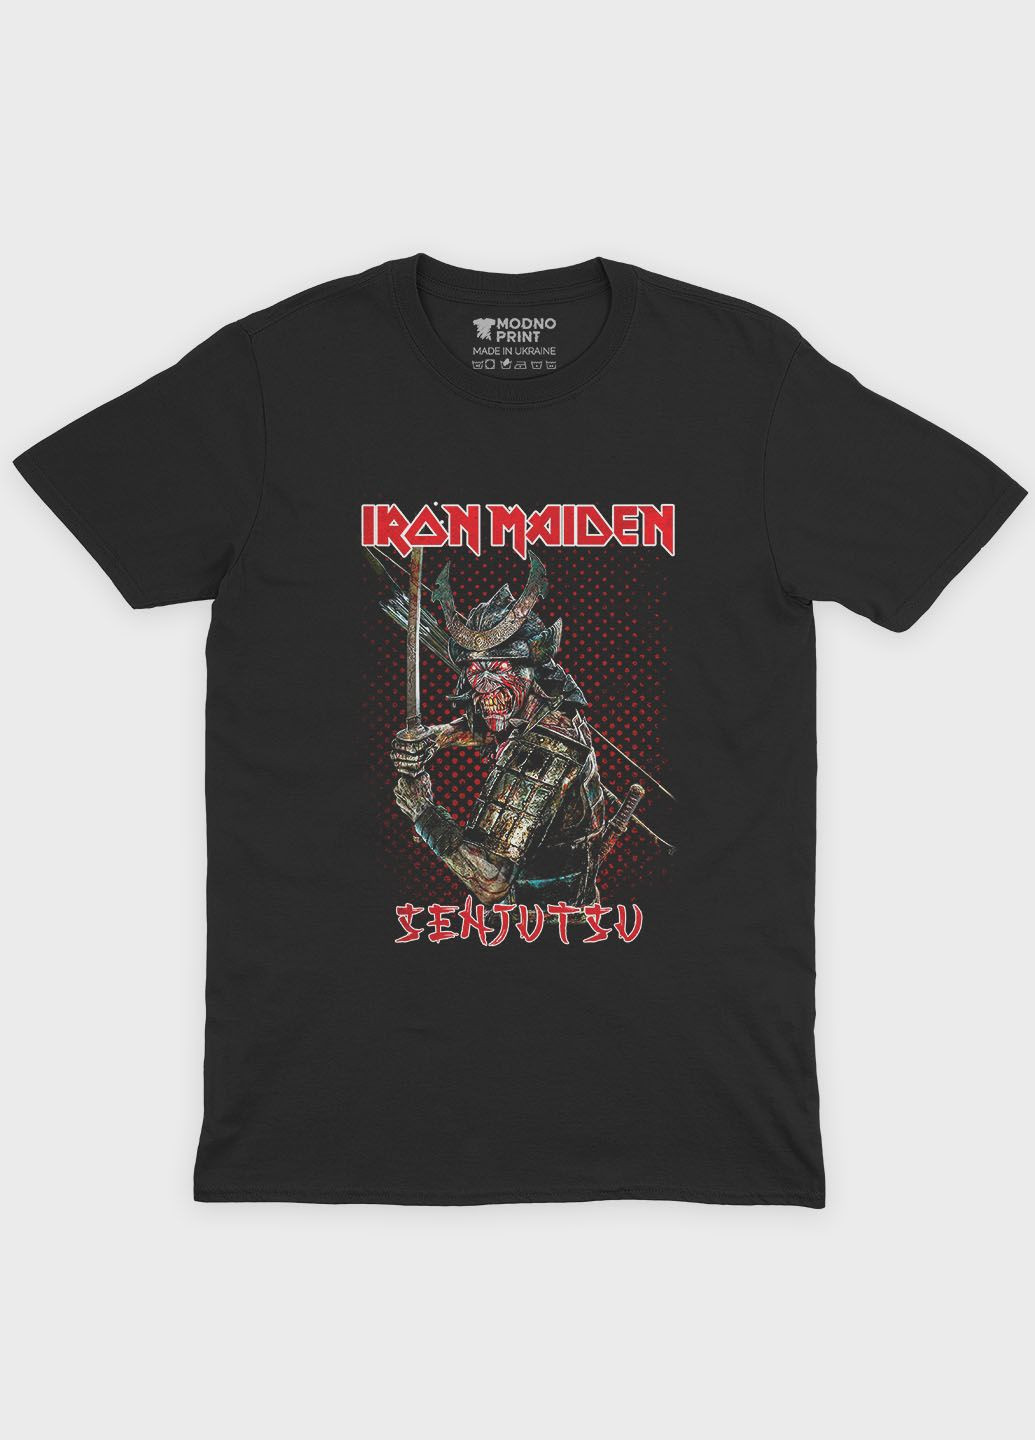 Чорна чоловіча футболка з рок принтом "iron maiden" (ts001-1-bl-004-2-132) Modno